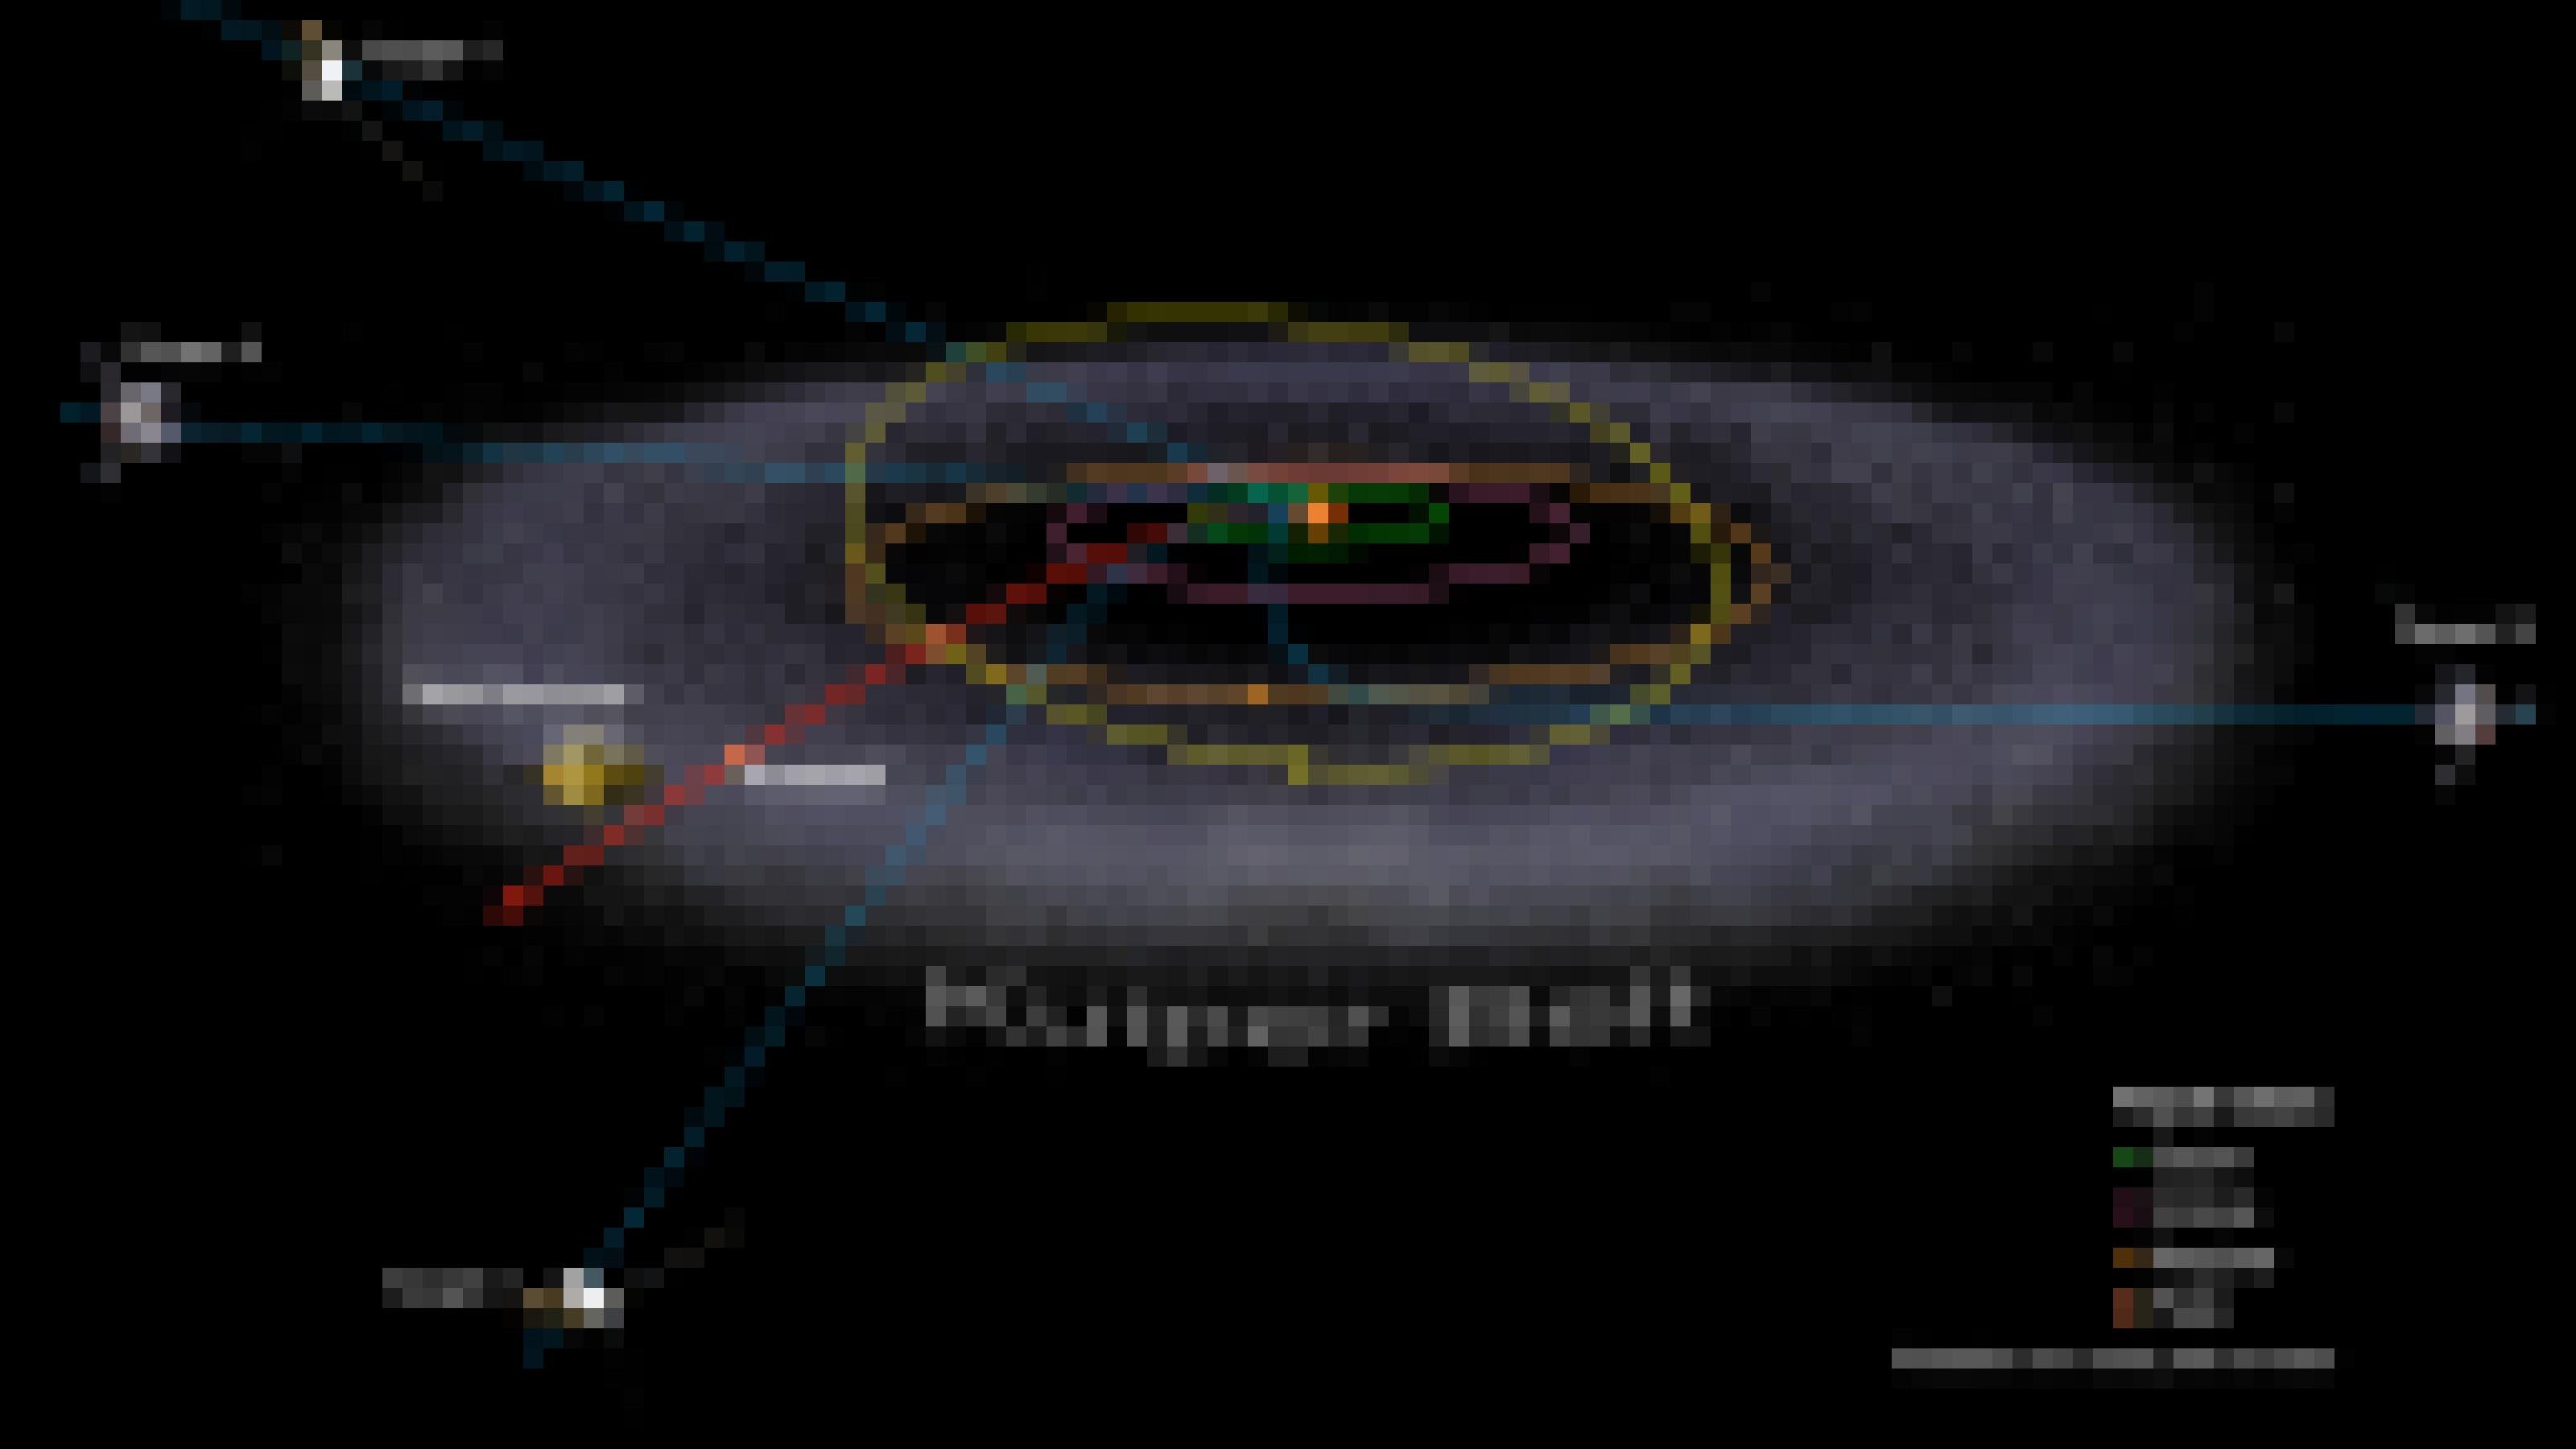 Eine Grafik des Sonnensystems zeigt die Bahnen der äußeren Planeten, die weiter außen von einem grauen Ring aus zahlreichen Himmelskörpern umgeben ist. Dessen englische Bezeichnung Kuiper Belt bedeutet Kuipergürtel. Die Bahnen von fünf Raumsonden sind eingezeichnet, die von der Erde kommend das Sonnensystem in unterschiedlichen Richtungen verlassen.